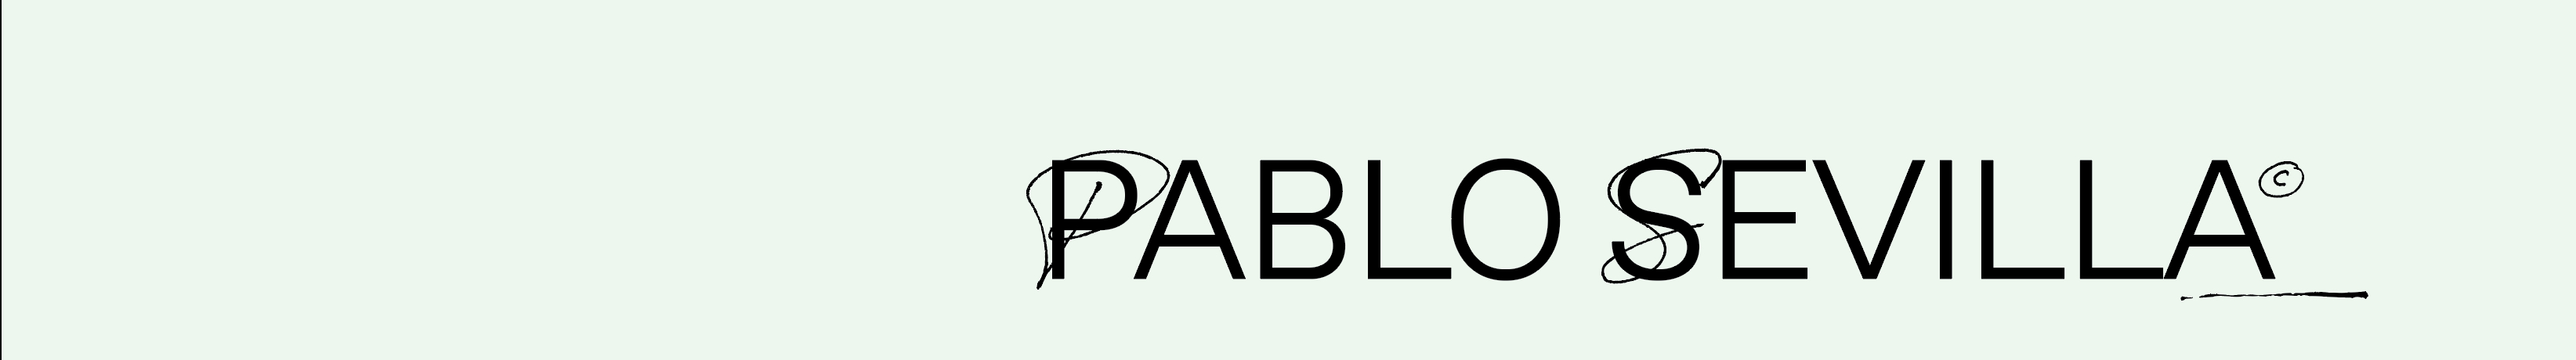 Pablo Sevilla's profile banner